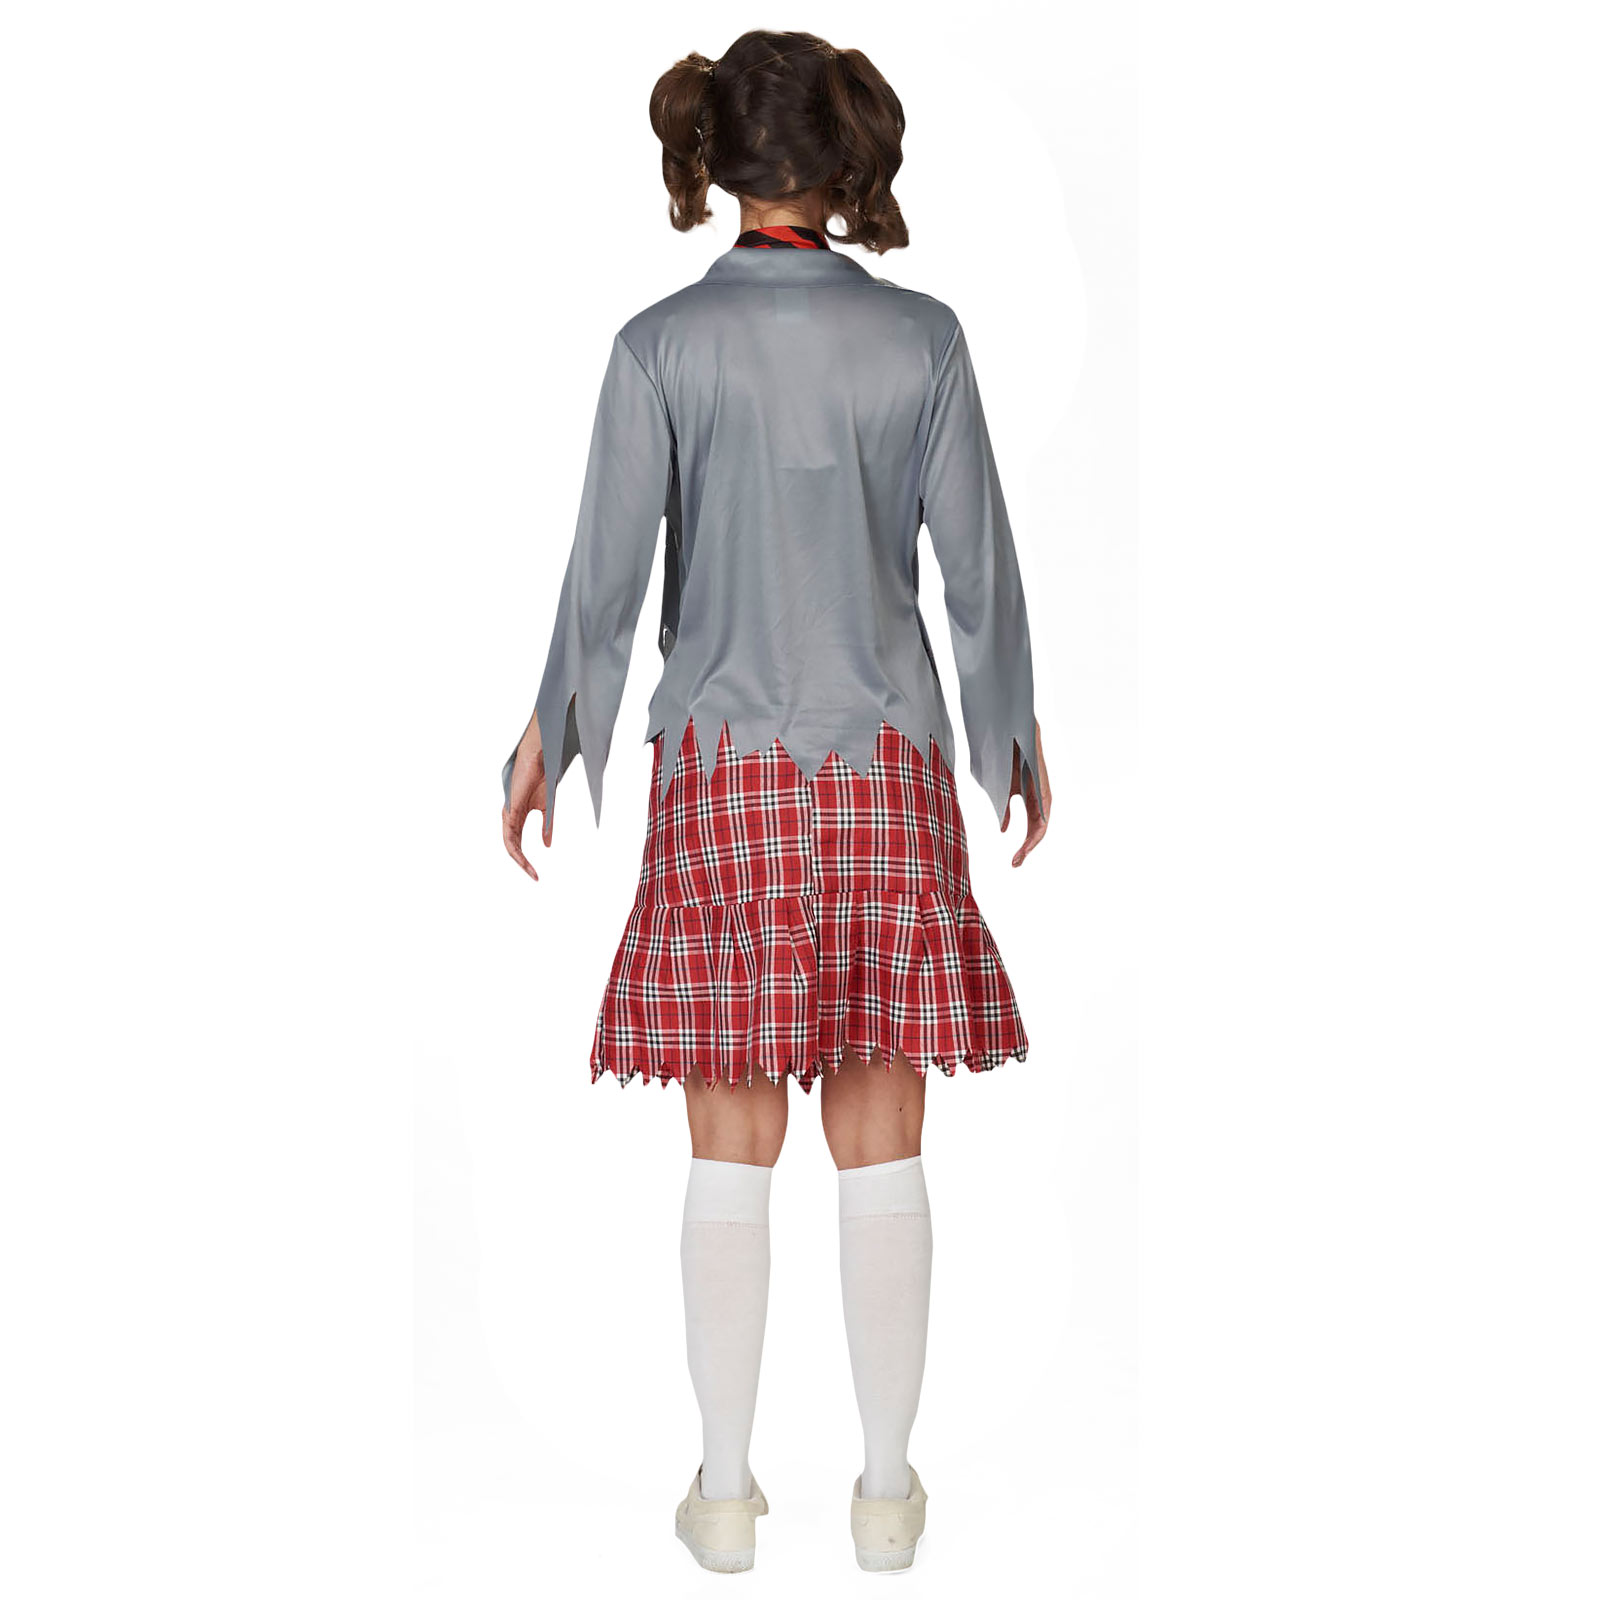 Zombie School Girl - Women's Costume